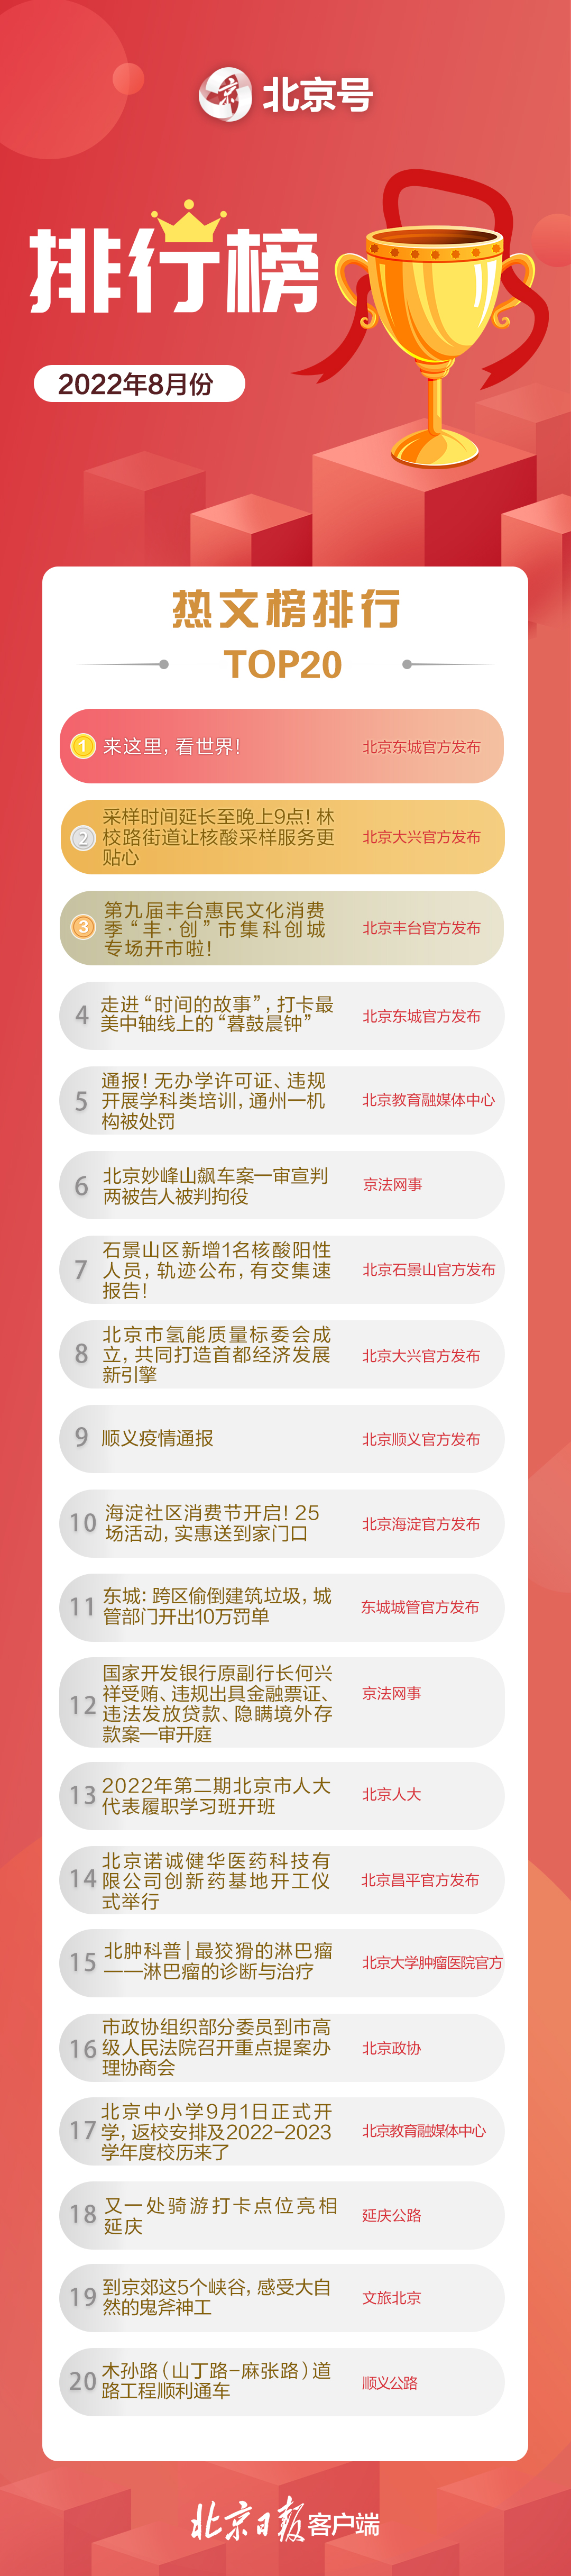 北京号2022年三季度影响力和热文排行榜出炉app推广30元一单平台潜艇事故